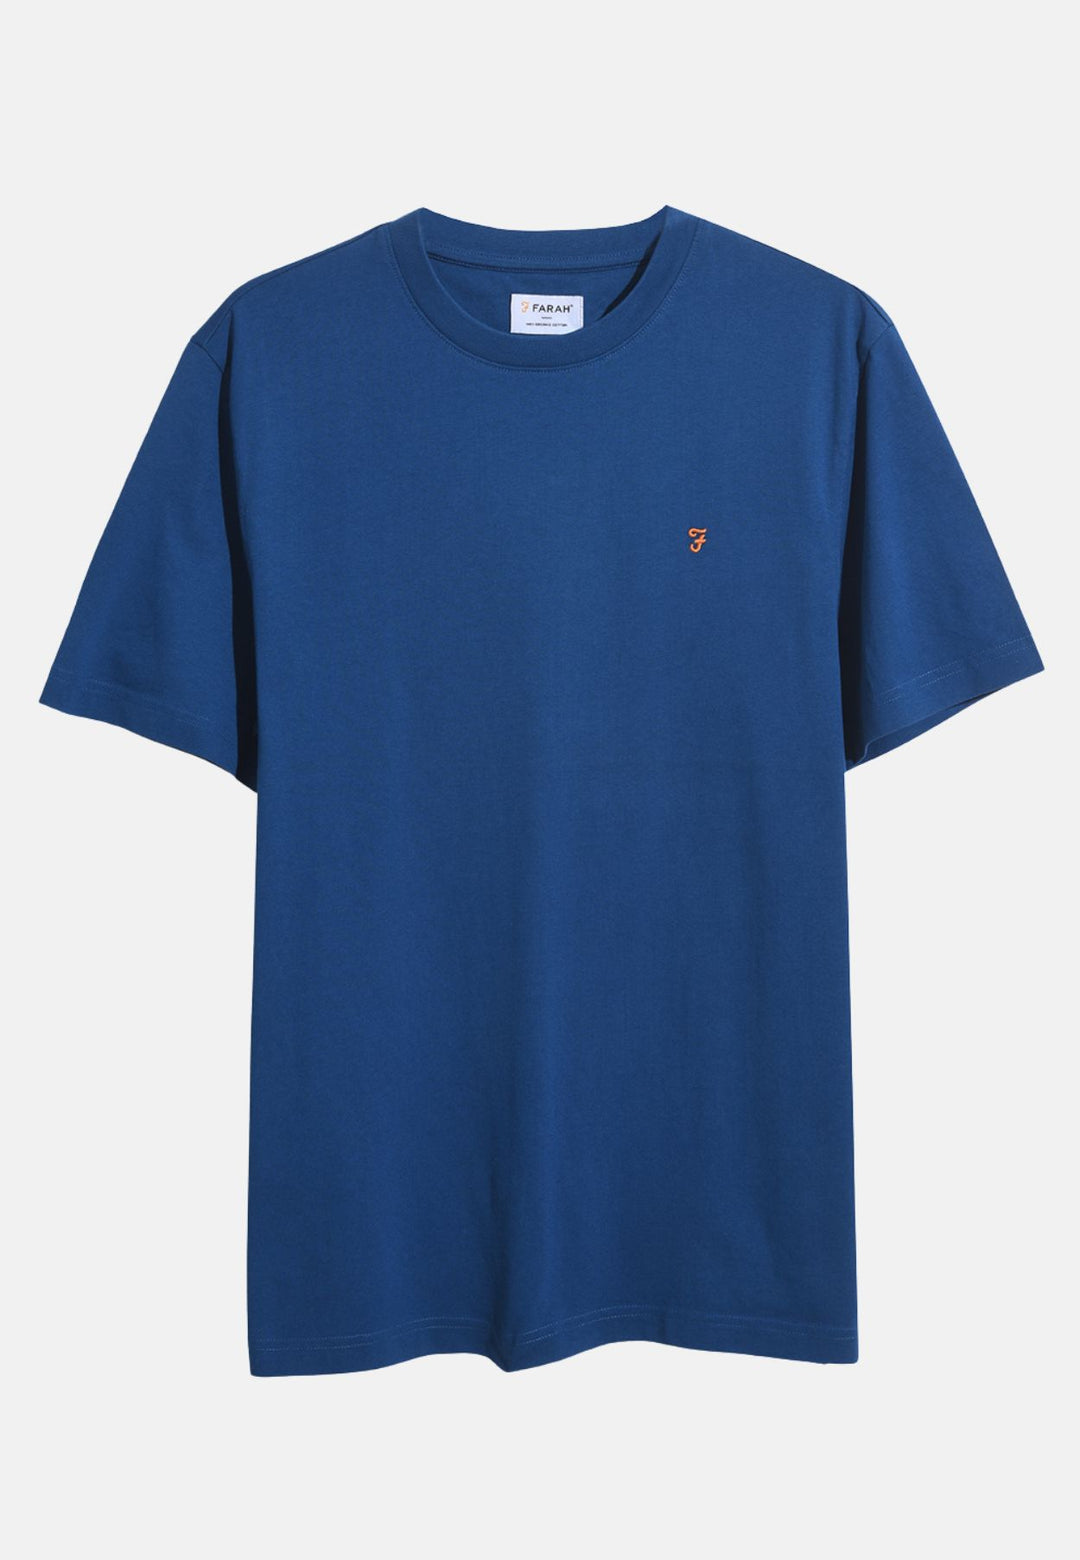 Men's Farah Danny T-Shirt in Blue